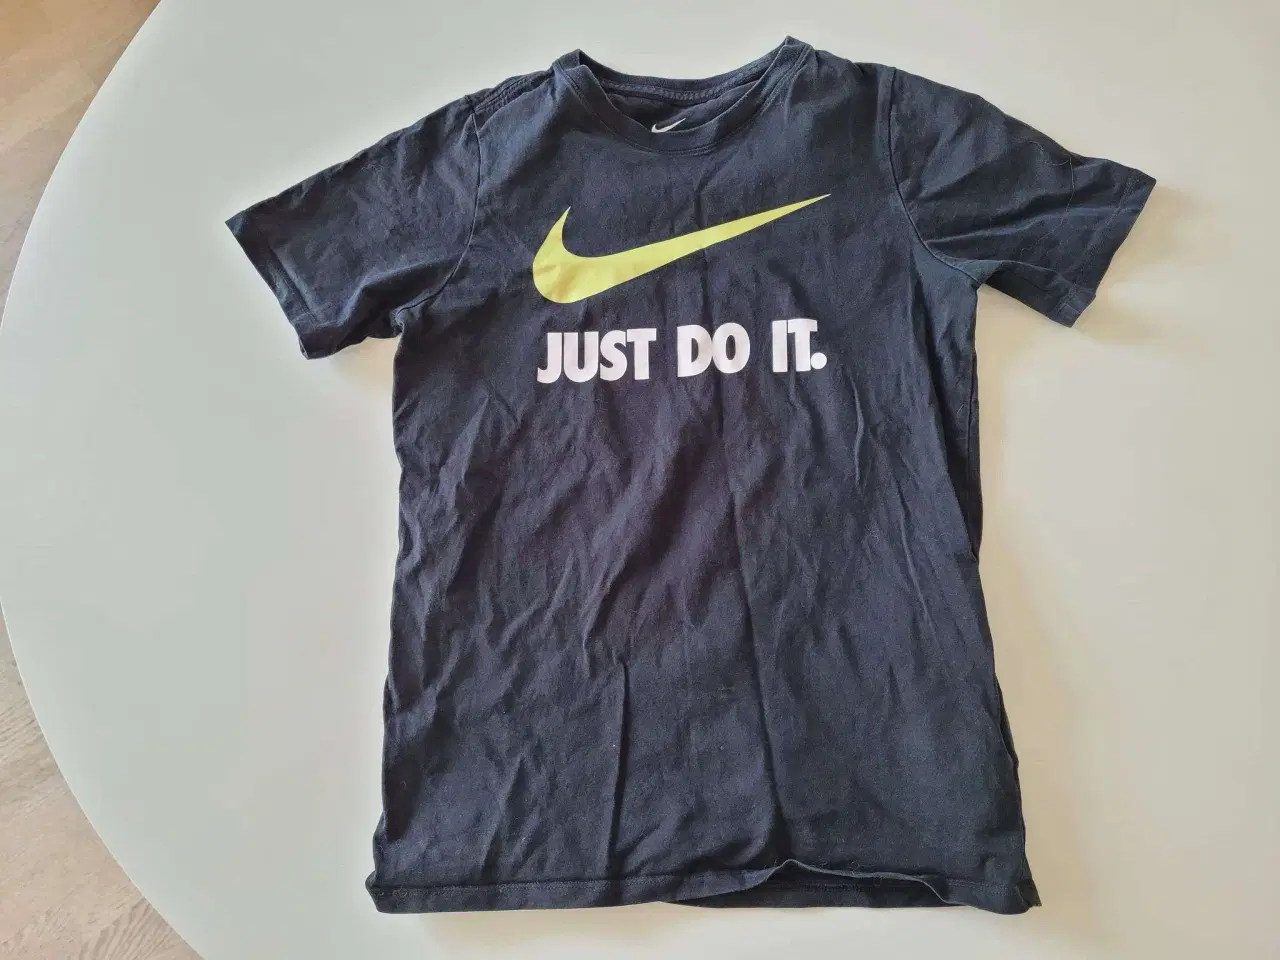 Billede 1 - Nike hoodie og Nike t-shirt str. 12 år sælges